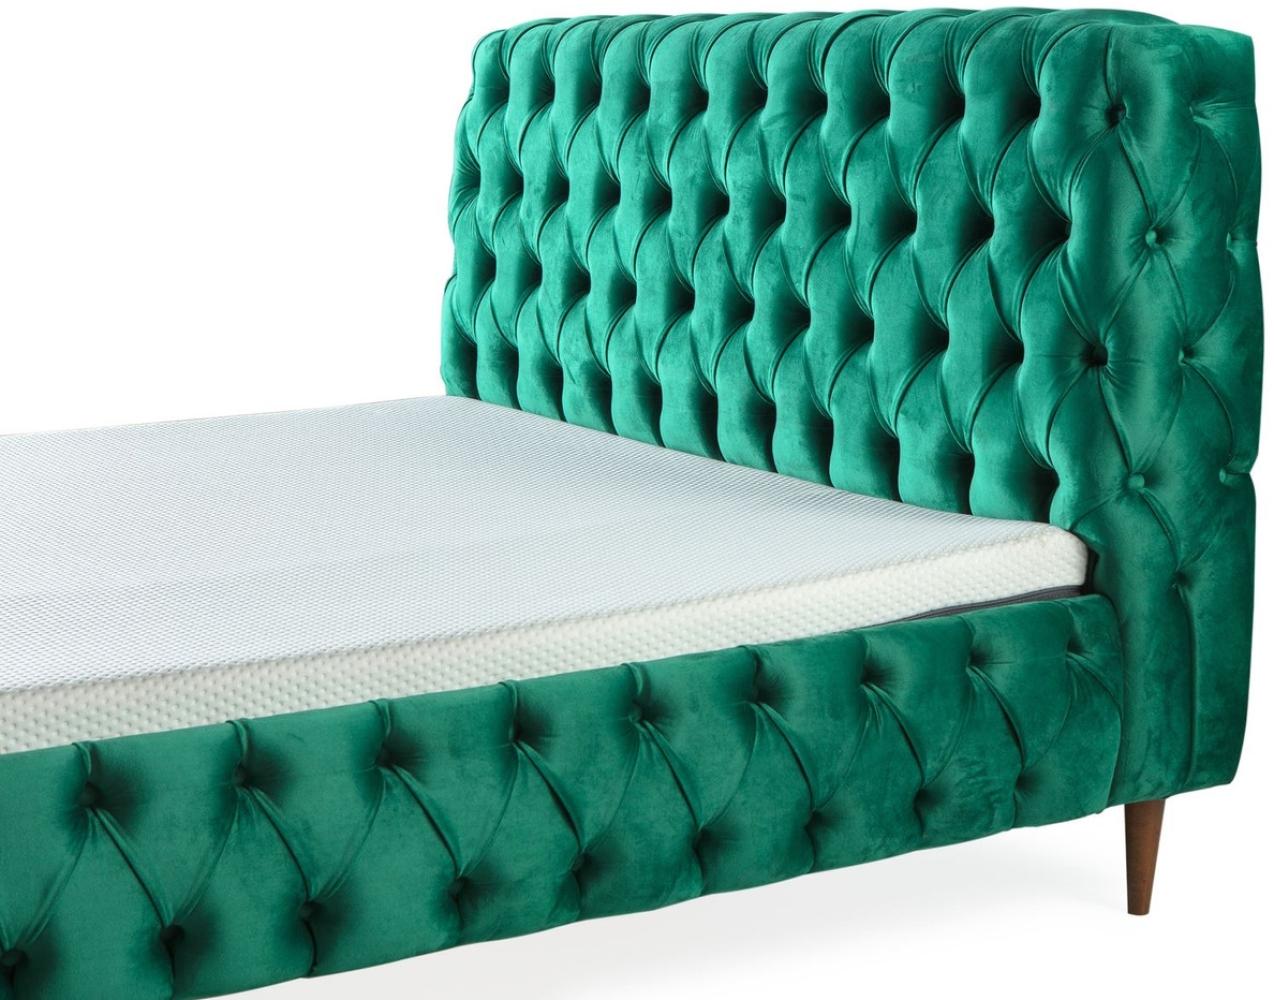 Casa Padrino Luxus Chesterfield Doppelbett Grün / Braun - Verschiedene Größen - Modernes Bett mit Matratze und Sitzbank - Schlafzimmer Möbel Bild 1